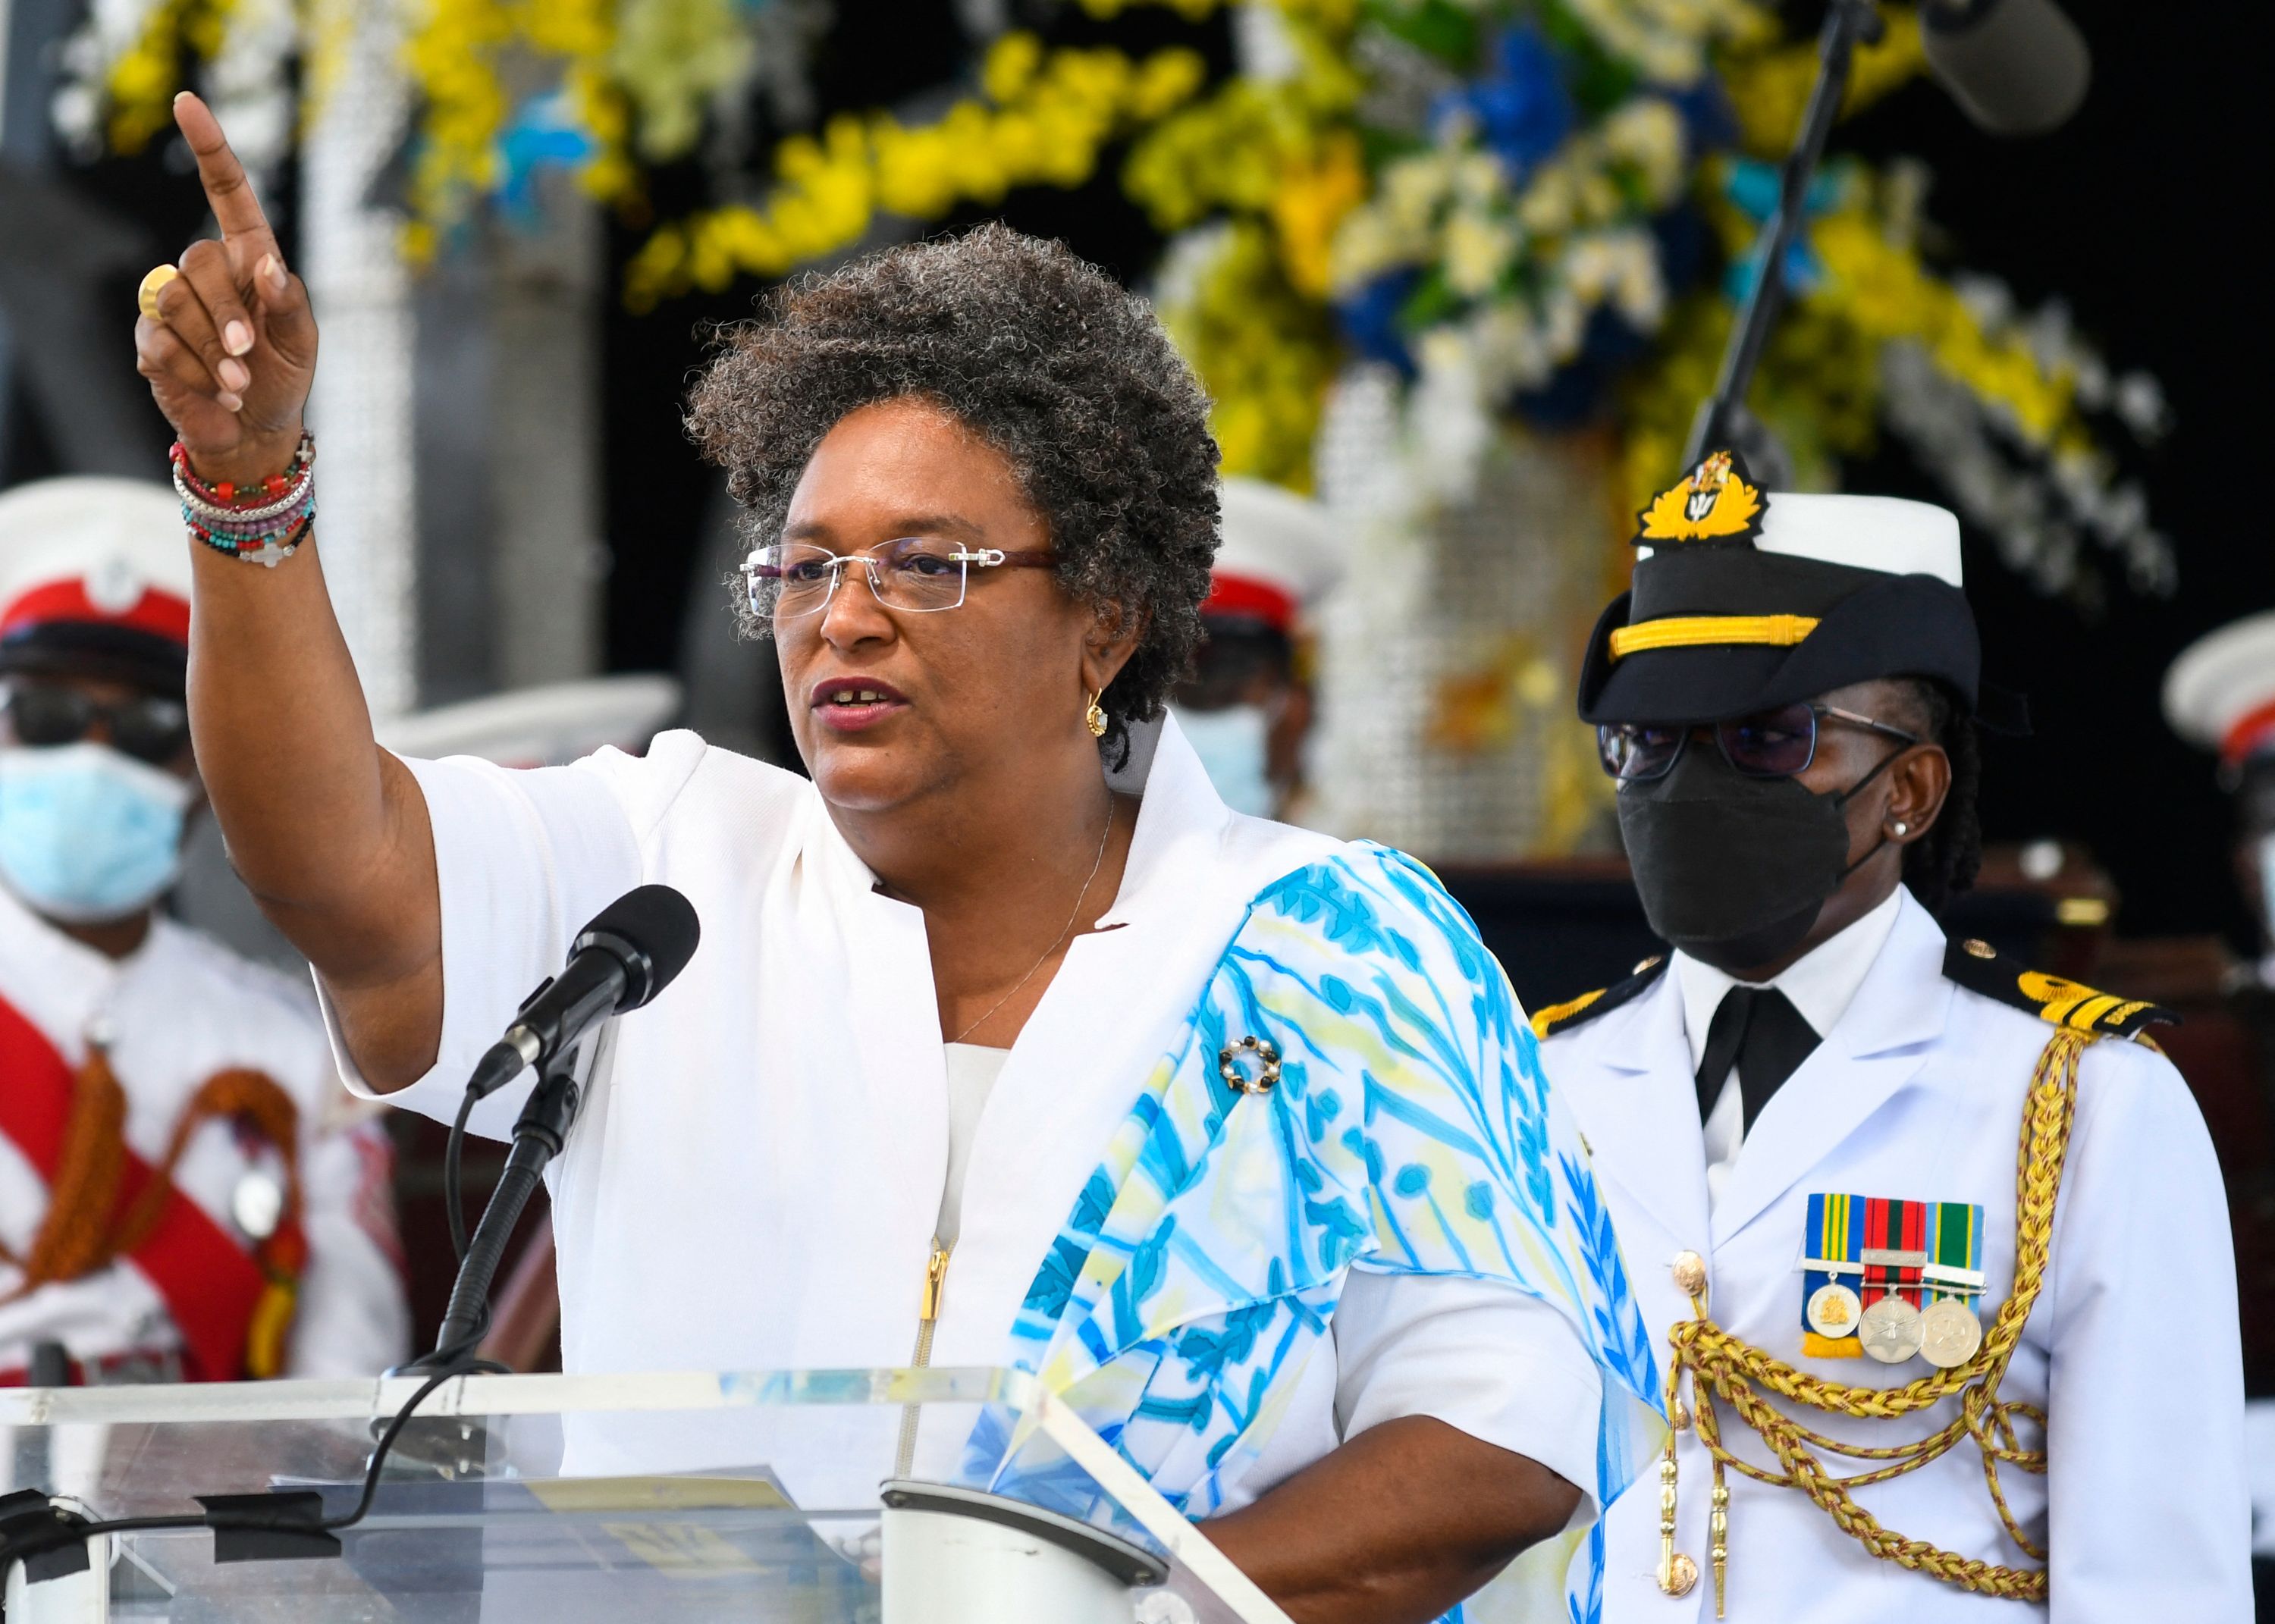 Mia Mottley hablando en la Plaza de los Héroes en Bridgetown, Barbados